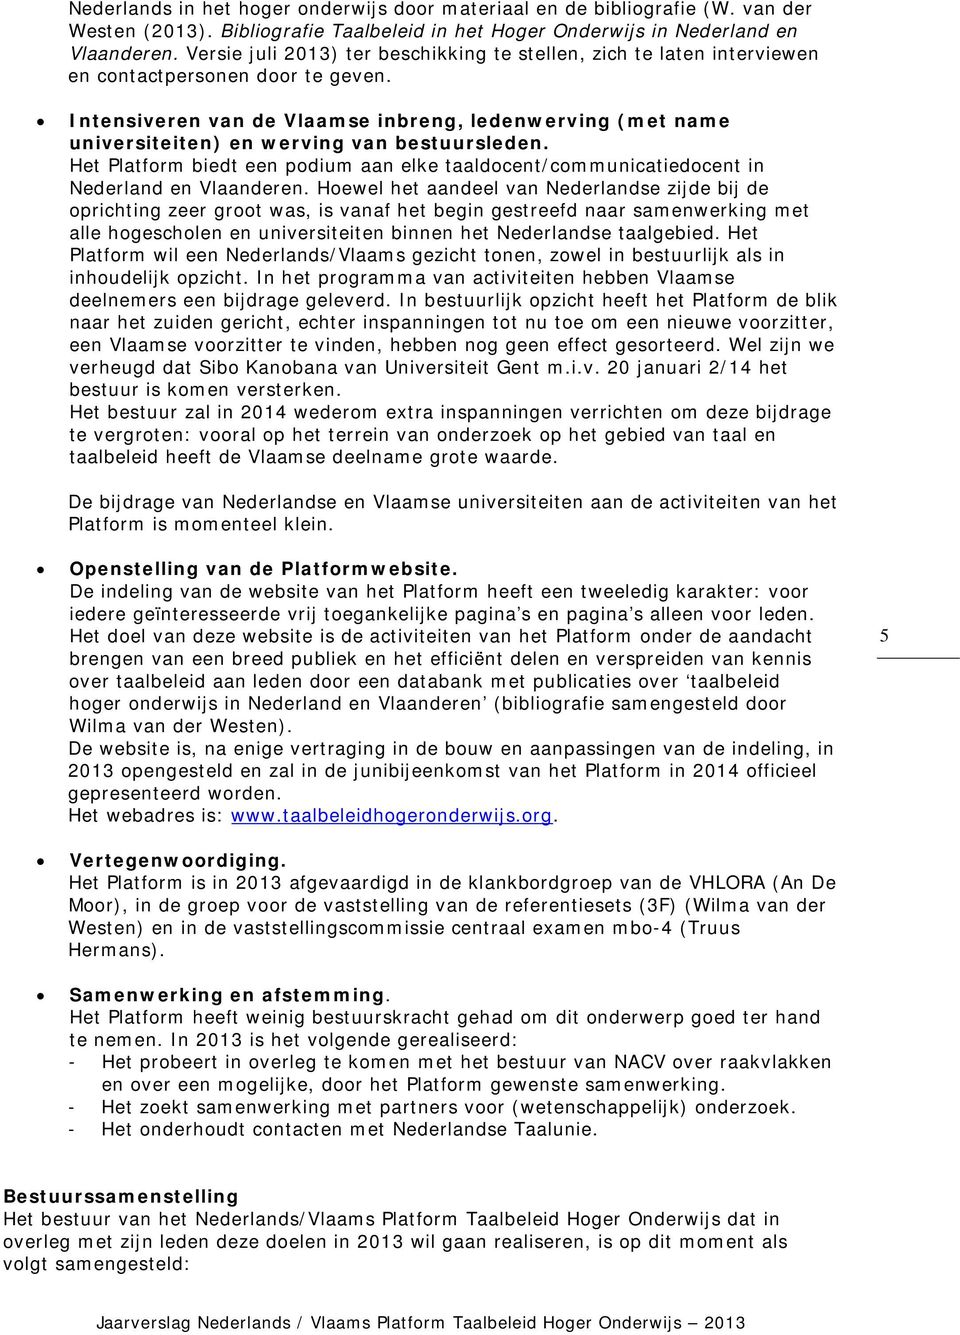 Intensiveren van de Vlaamse inbreng, ledenwerving (met name universiteiten) en werving van bestuursleden.